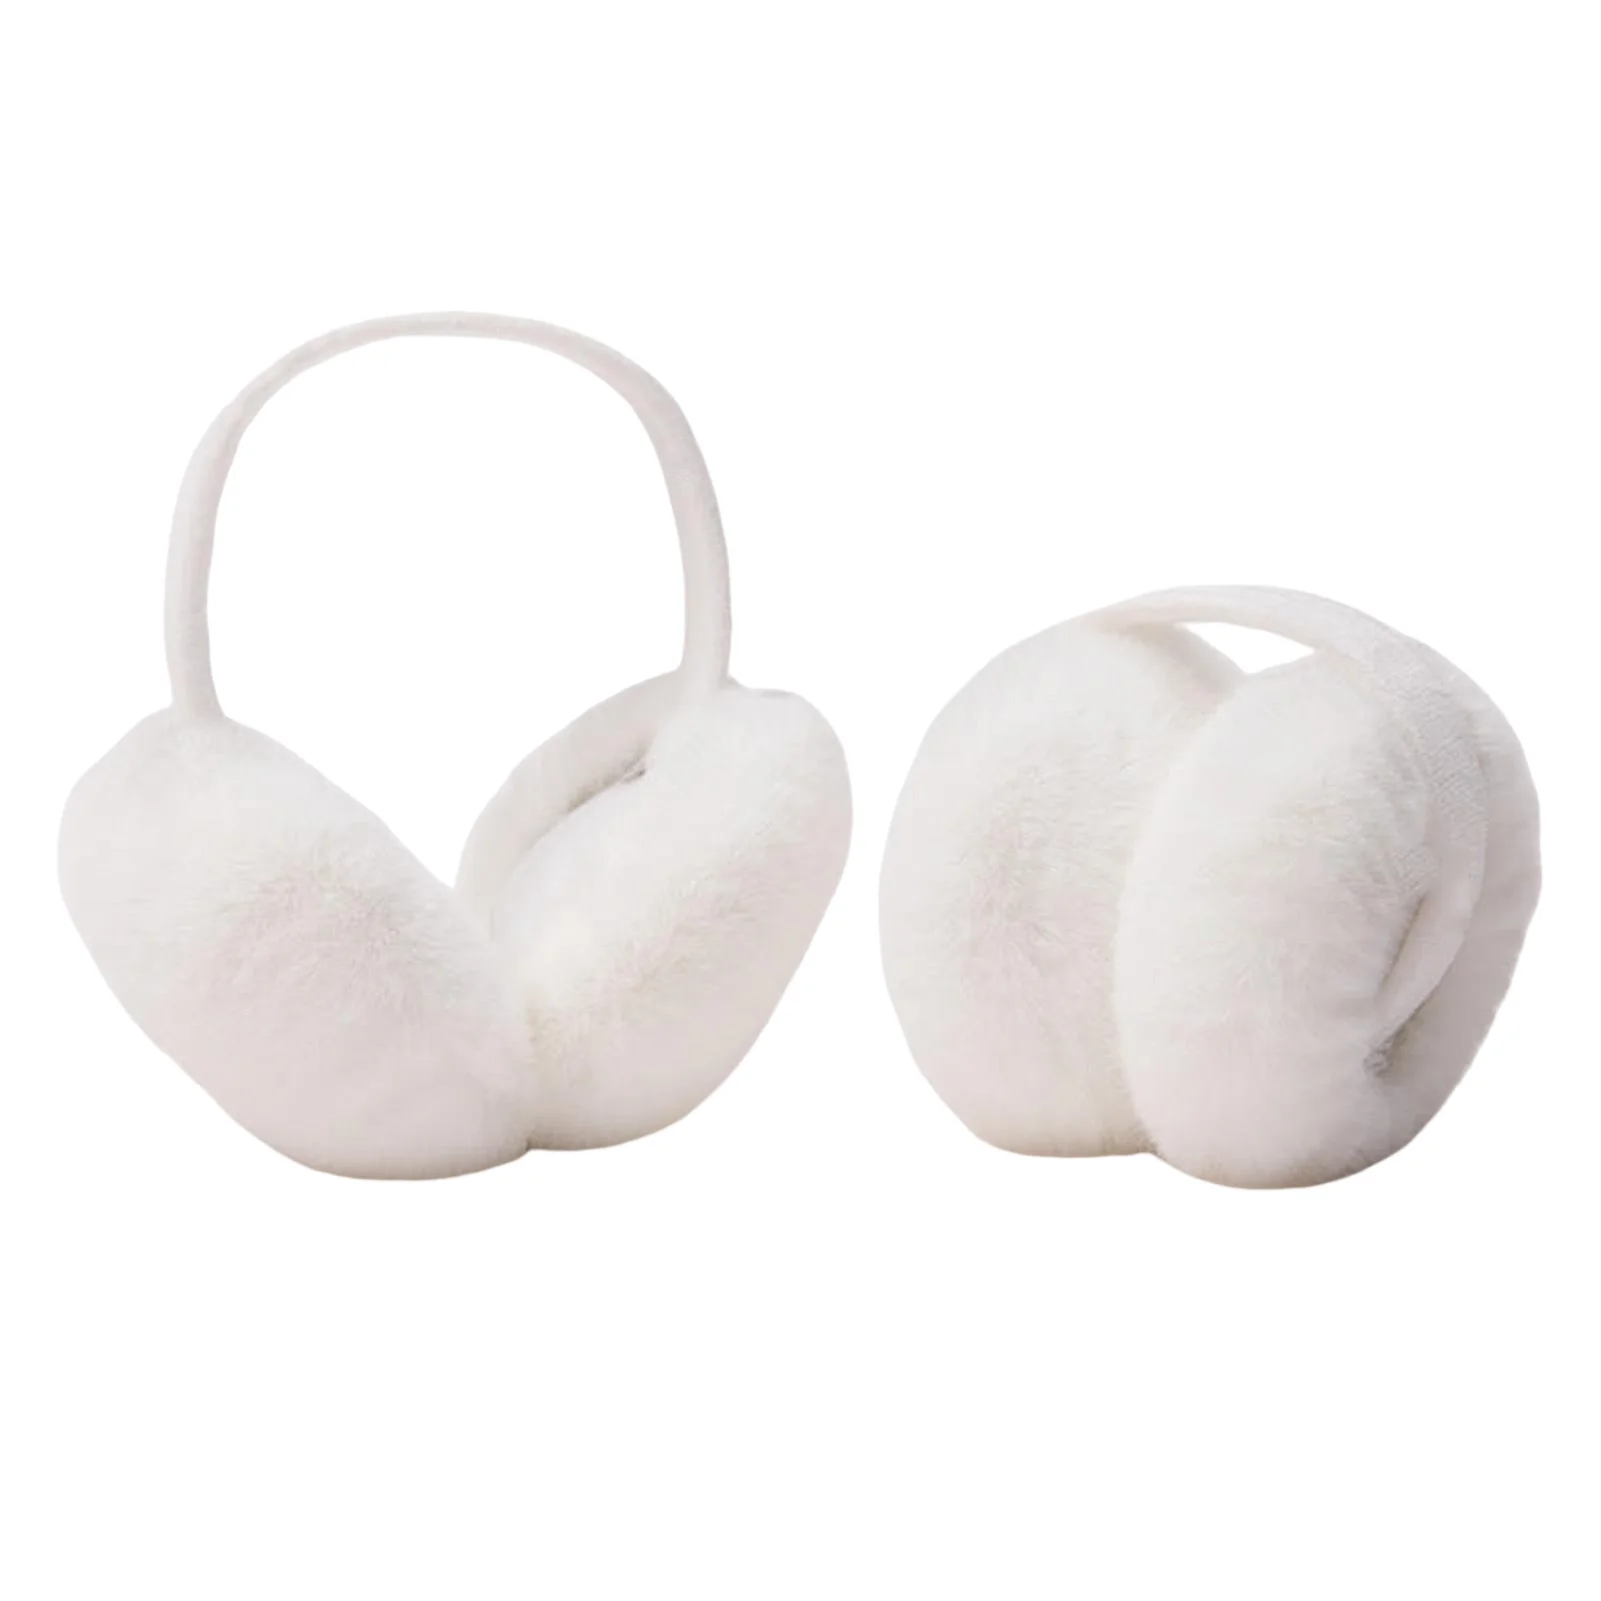 Wamer telinga lembut ringan dengan tas telinga yang dapat dilepas untuk membersihkan cocok untuk lingkar kepala 99%